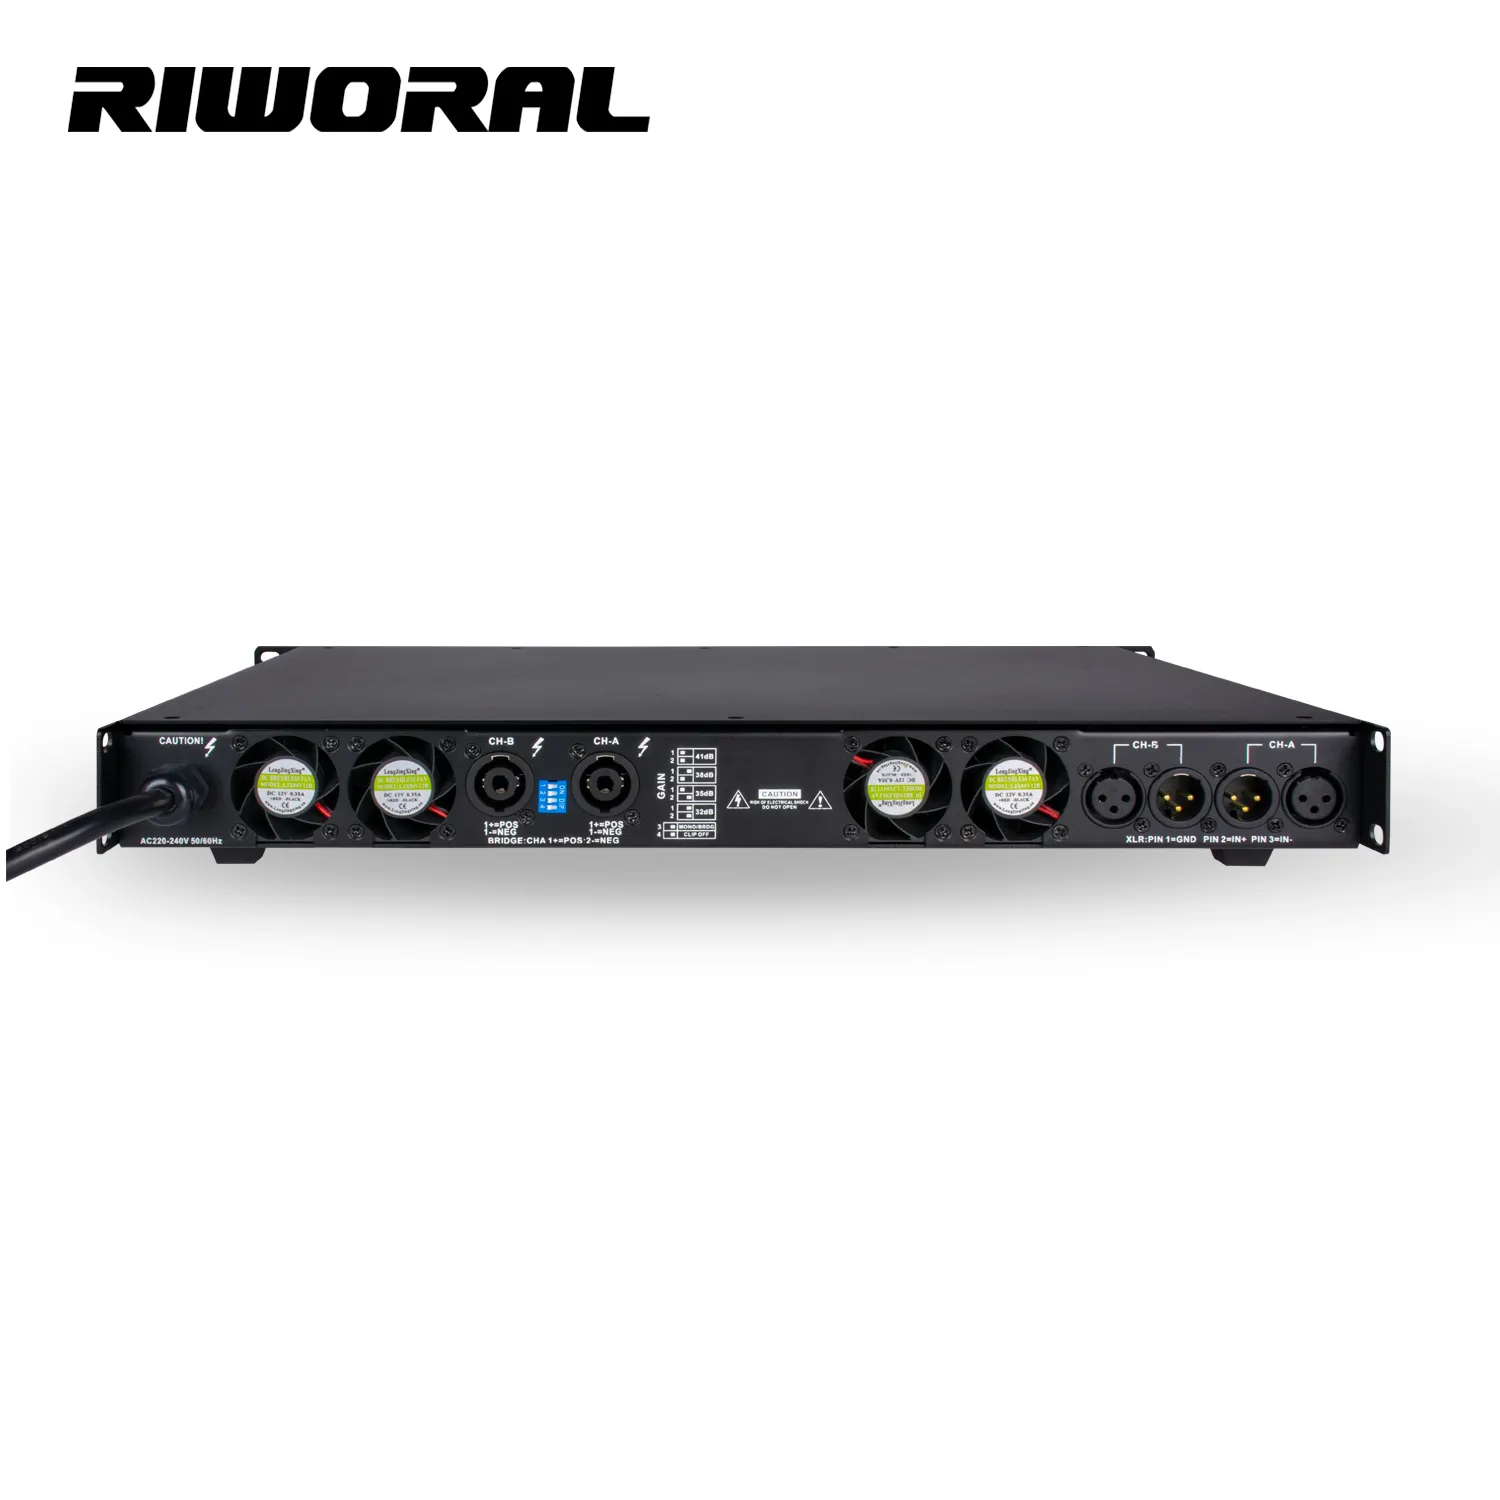 RPX-2 1U sistema di altoparlanti per l'intrattenimento con amplificatore digitale di classe D ad alta potenza professionale